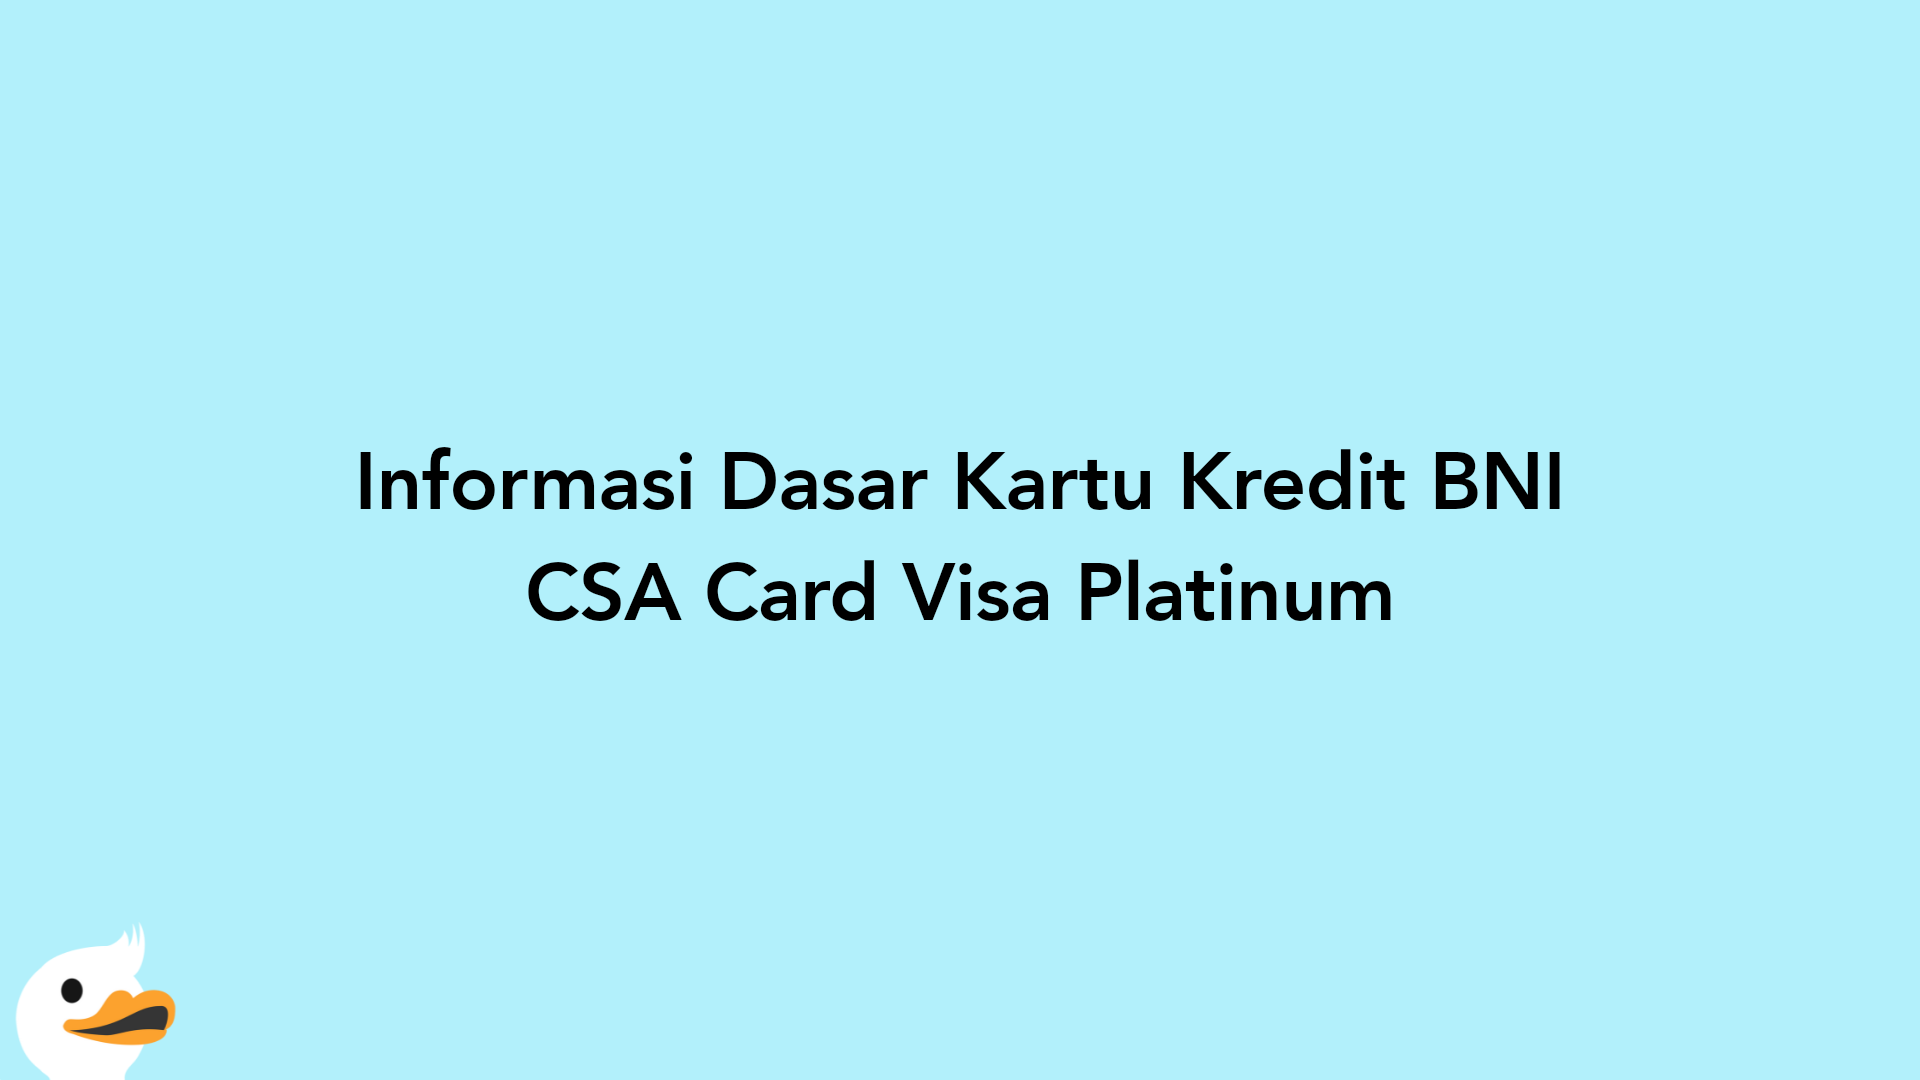 Informasi Dasar Kartu Kredit BNI CSA Card Visa Platinum